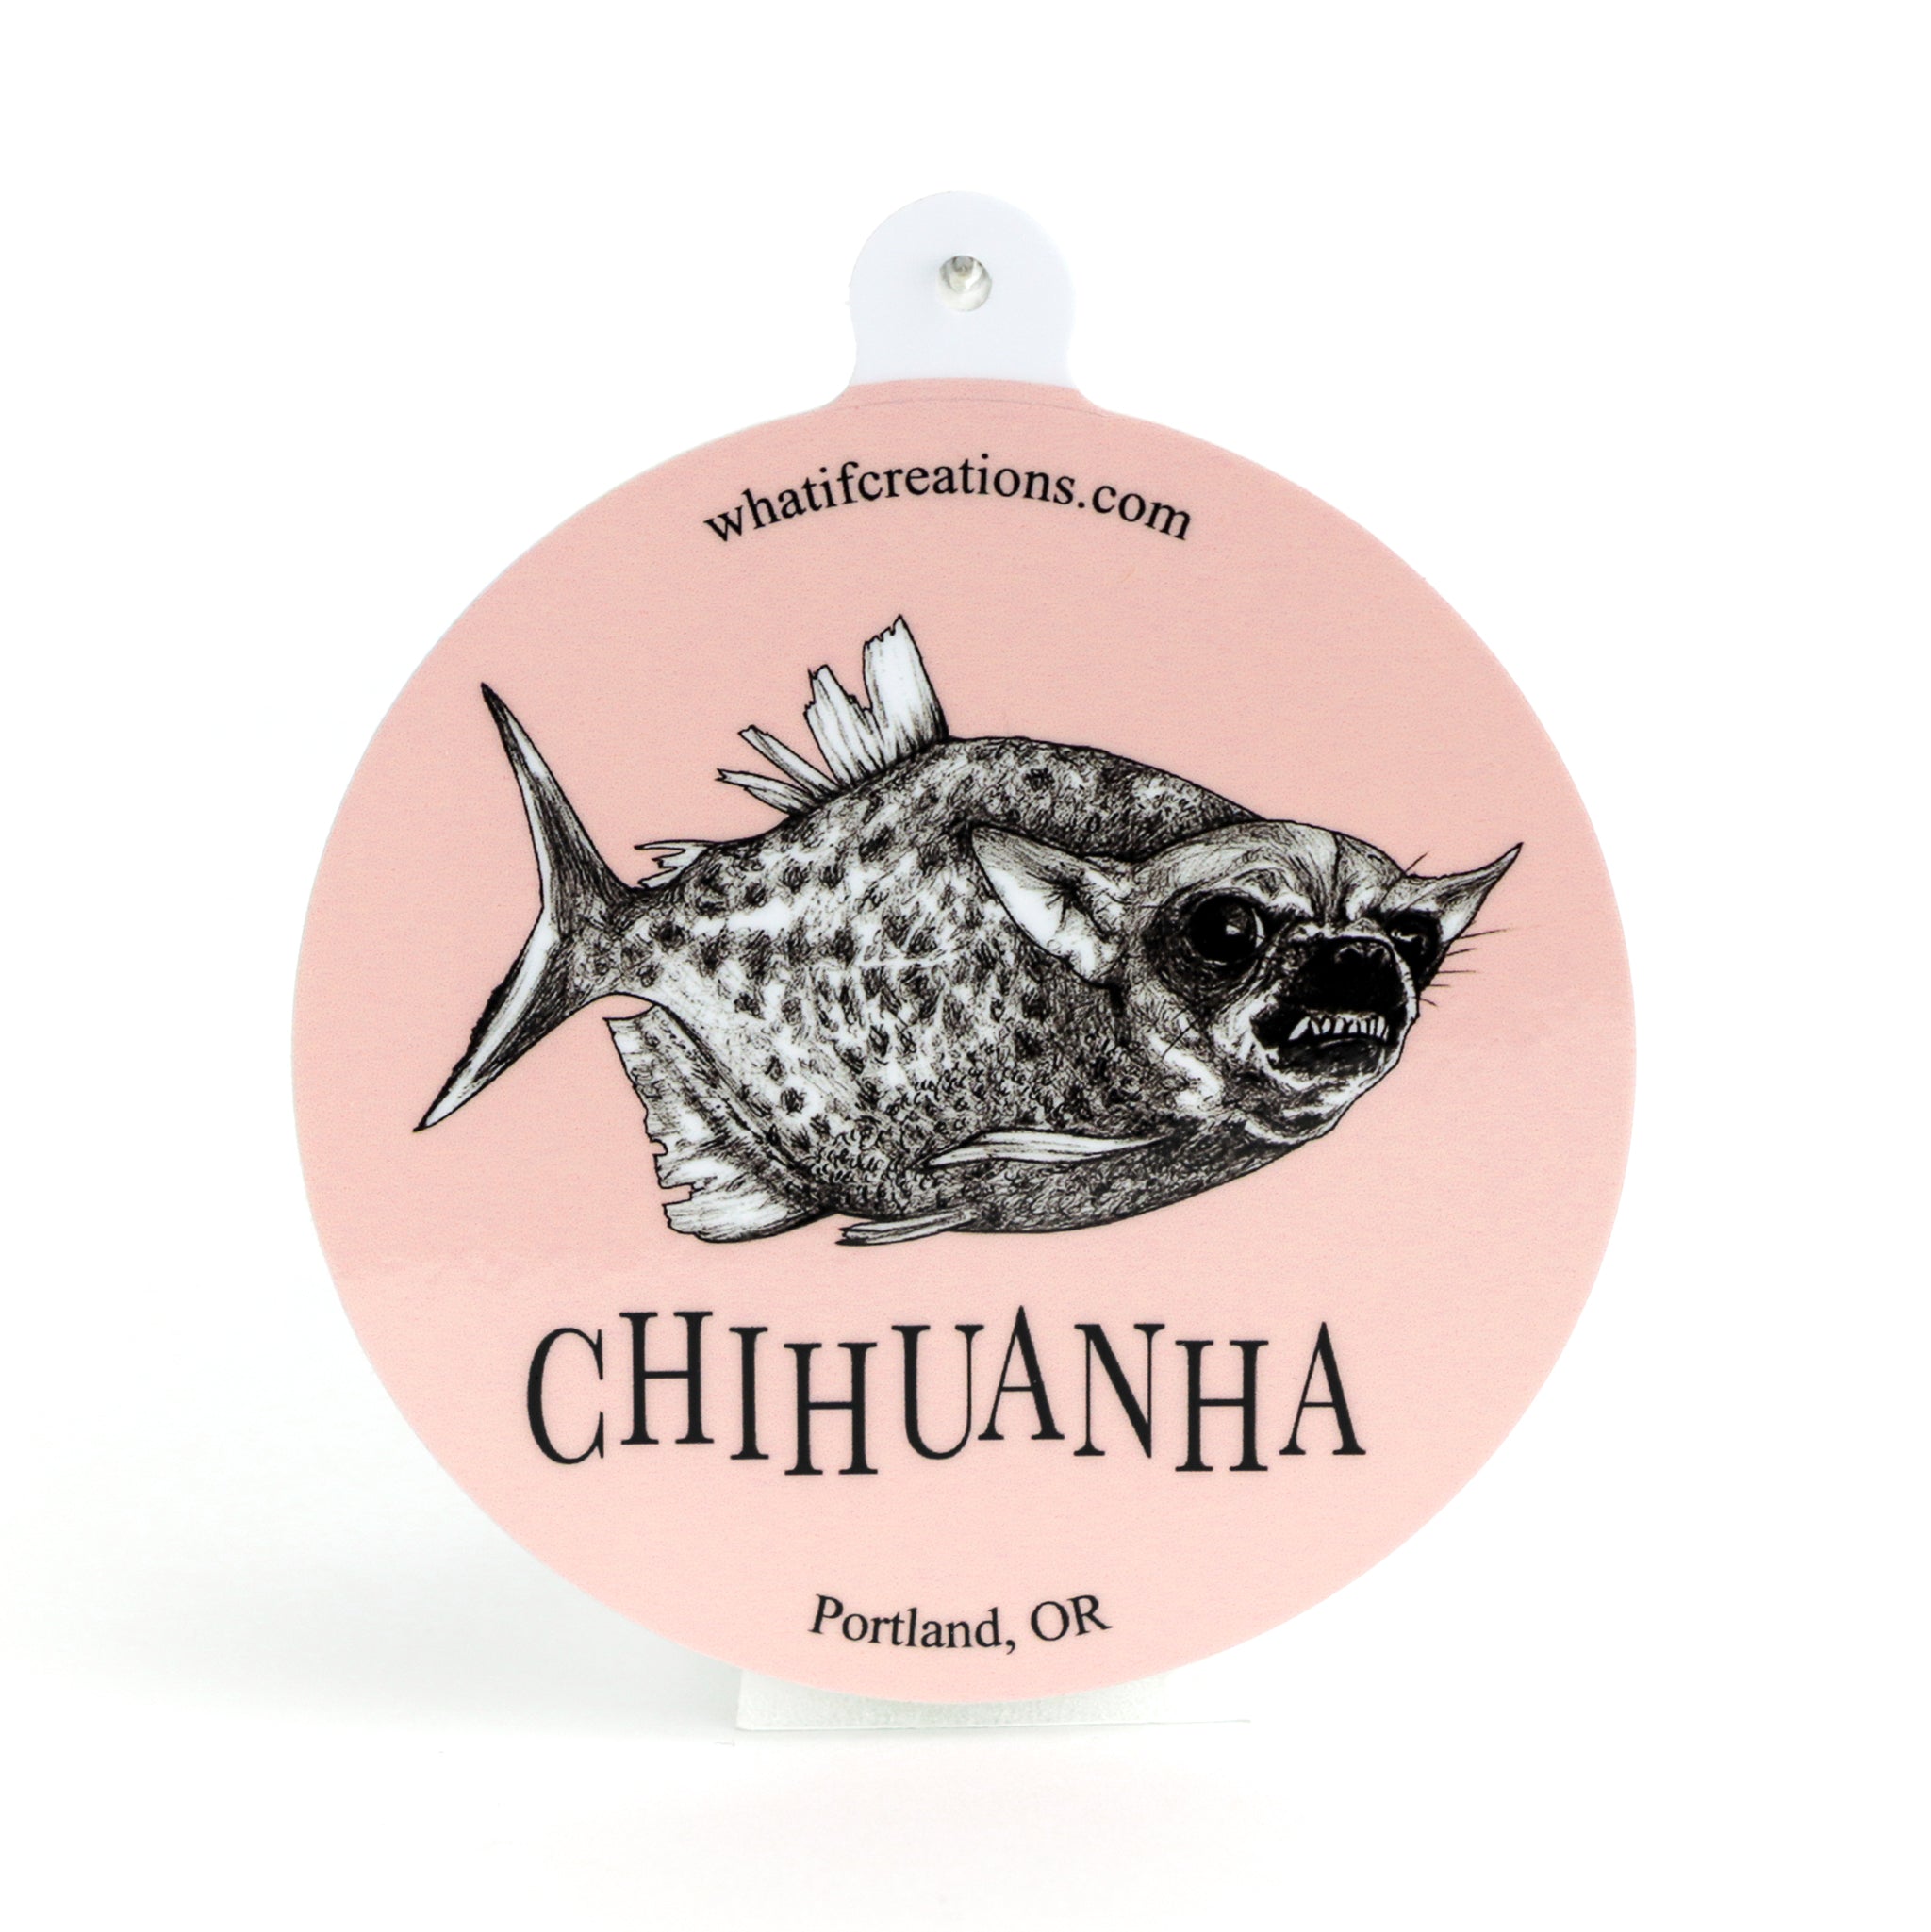 Chihuanha | Piranha + Chihuahua Hybrid Animal | 3" Vinyl Sticker